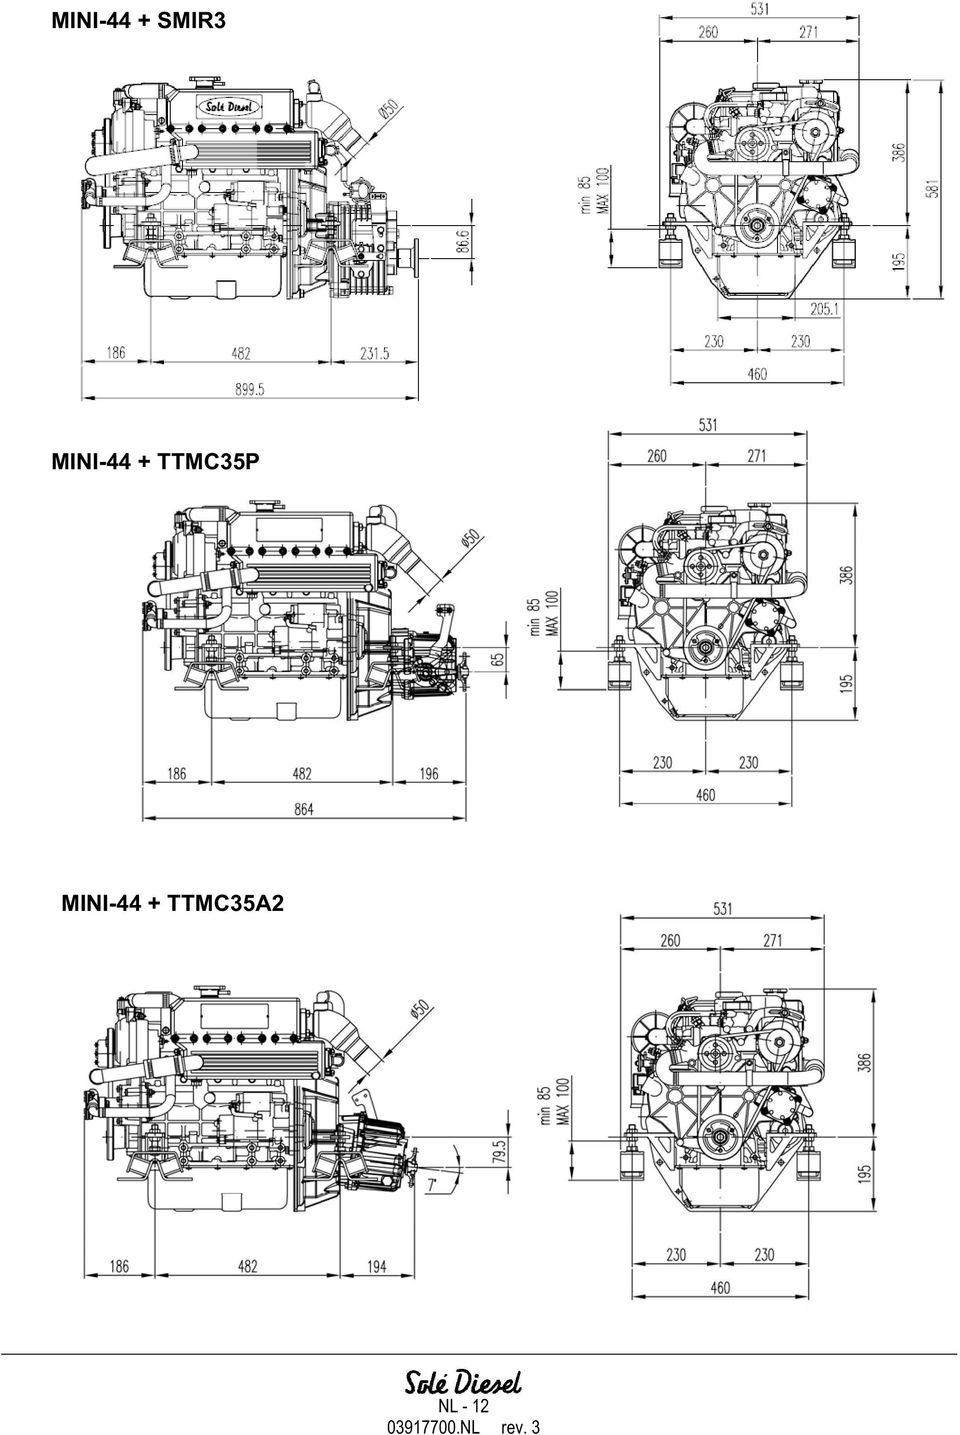 TTMC35A2 NL -